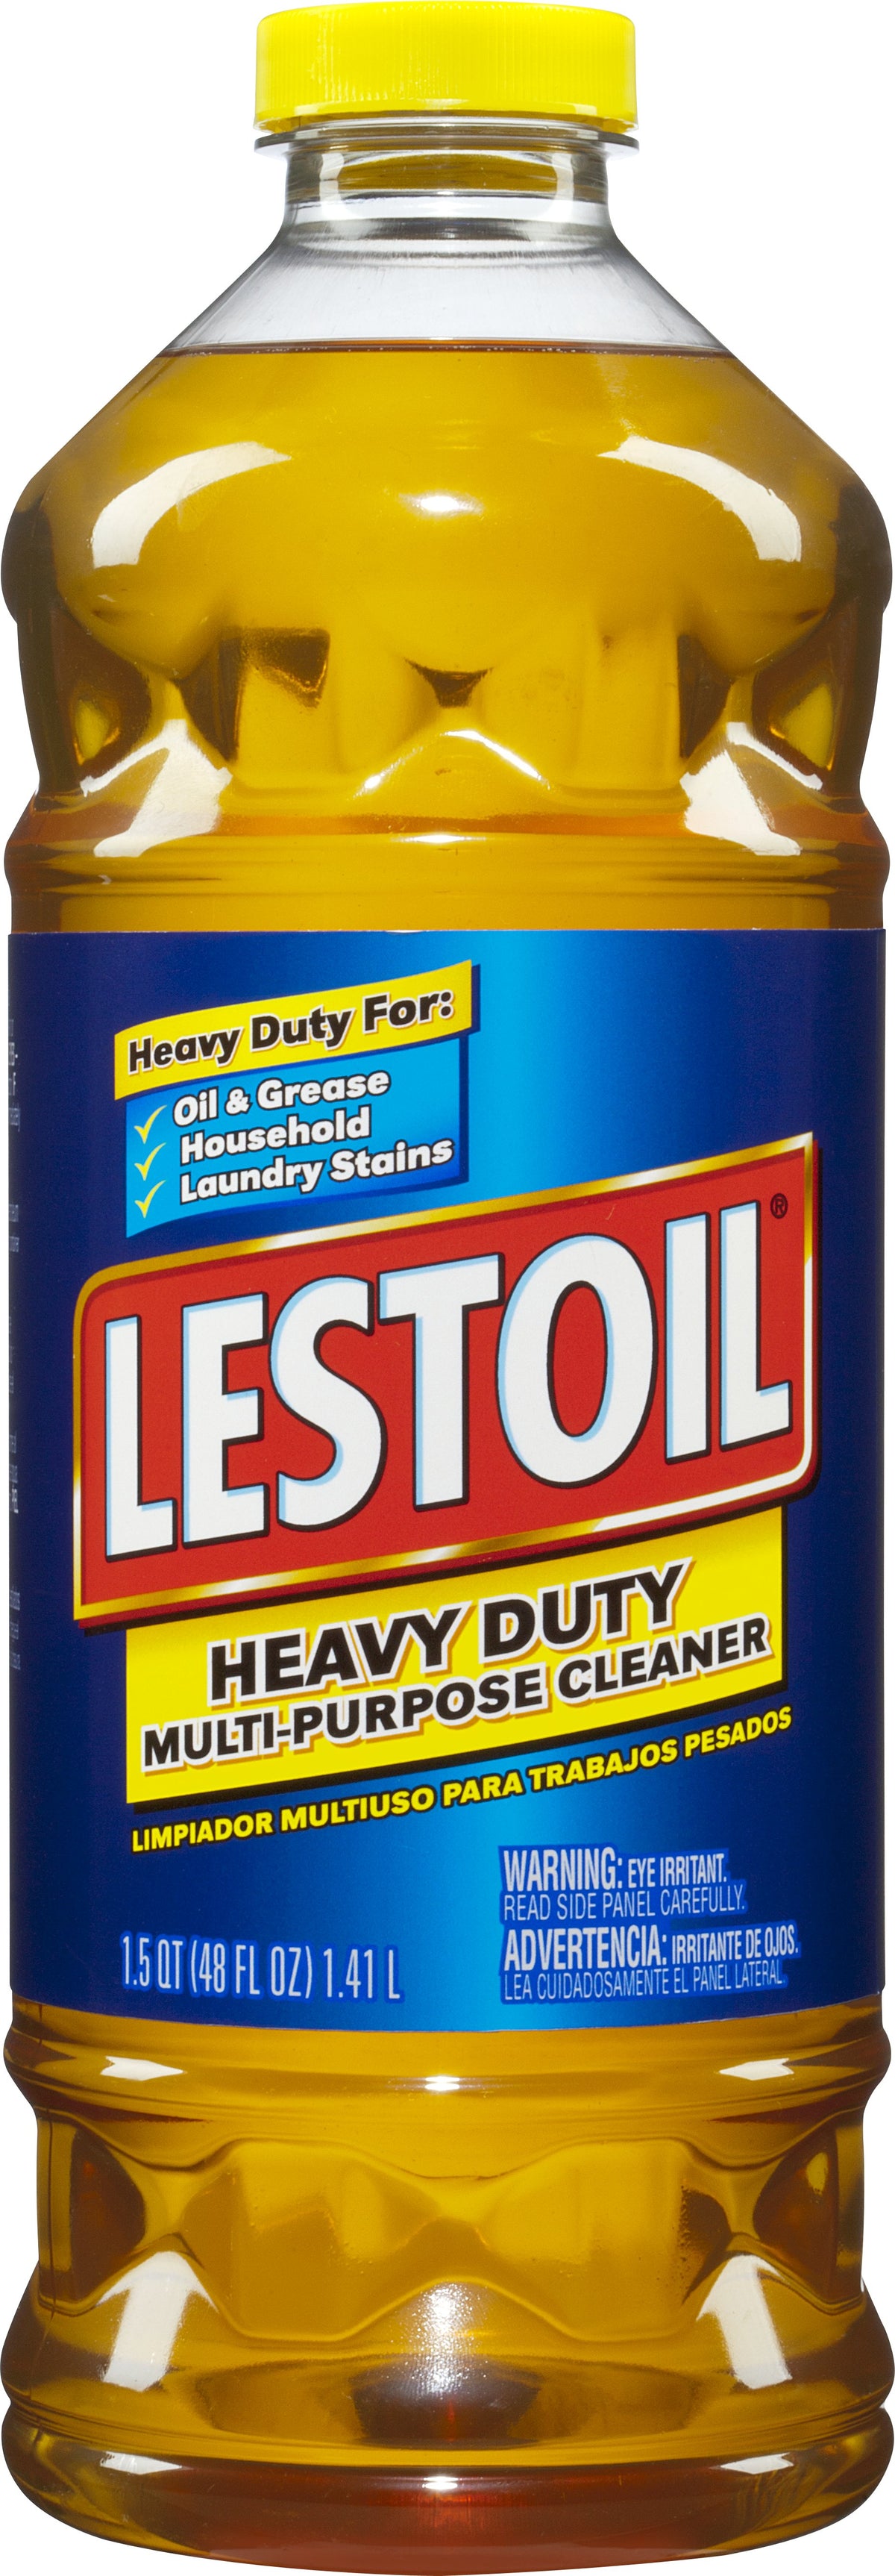 Lestoil 33916 Heavy Duty Multi-Purpose Cleaner, 48 Oz